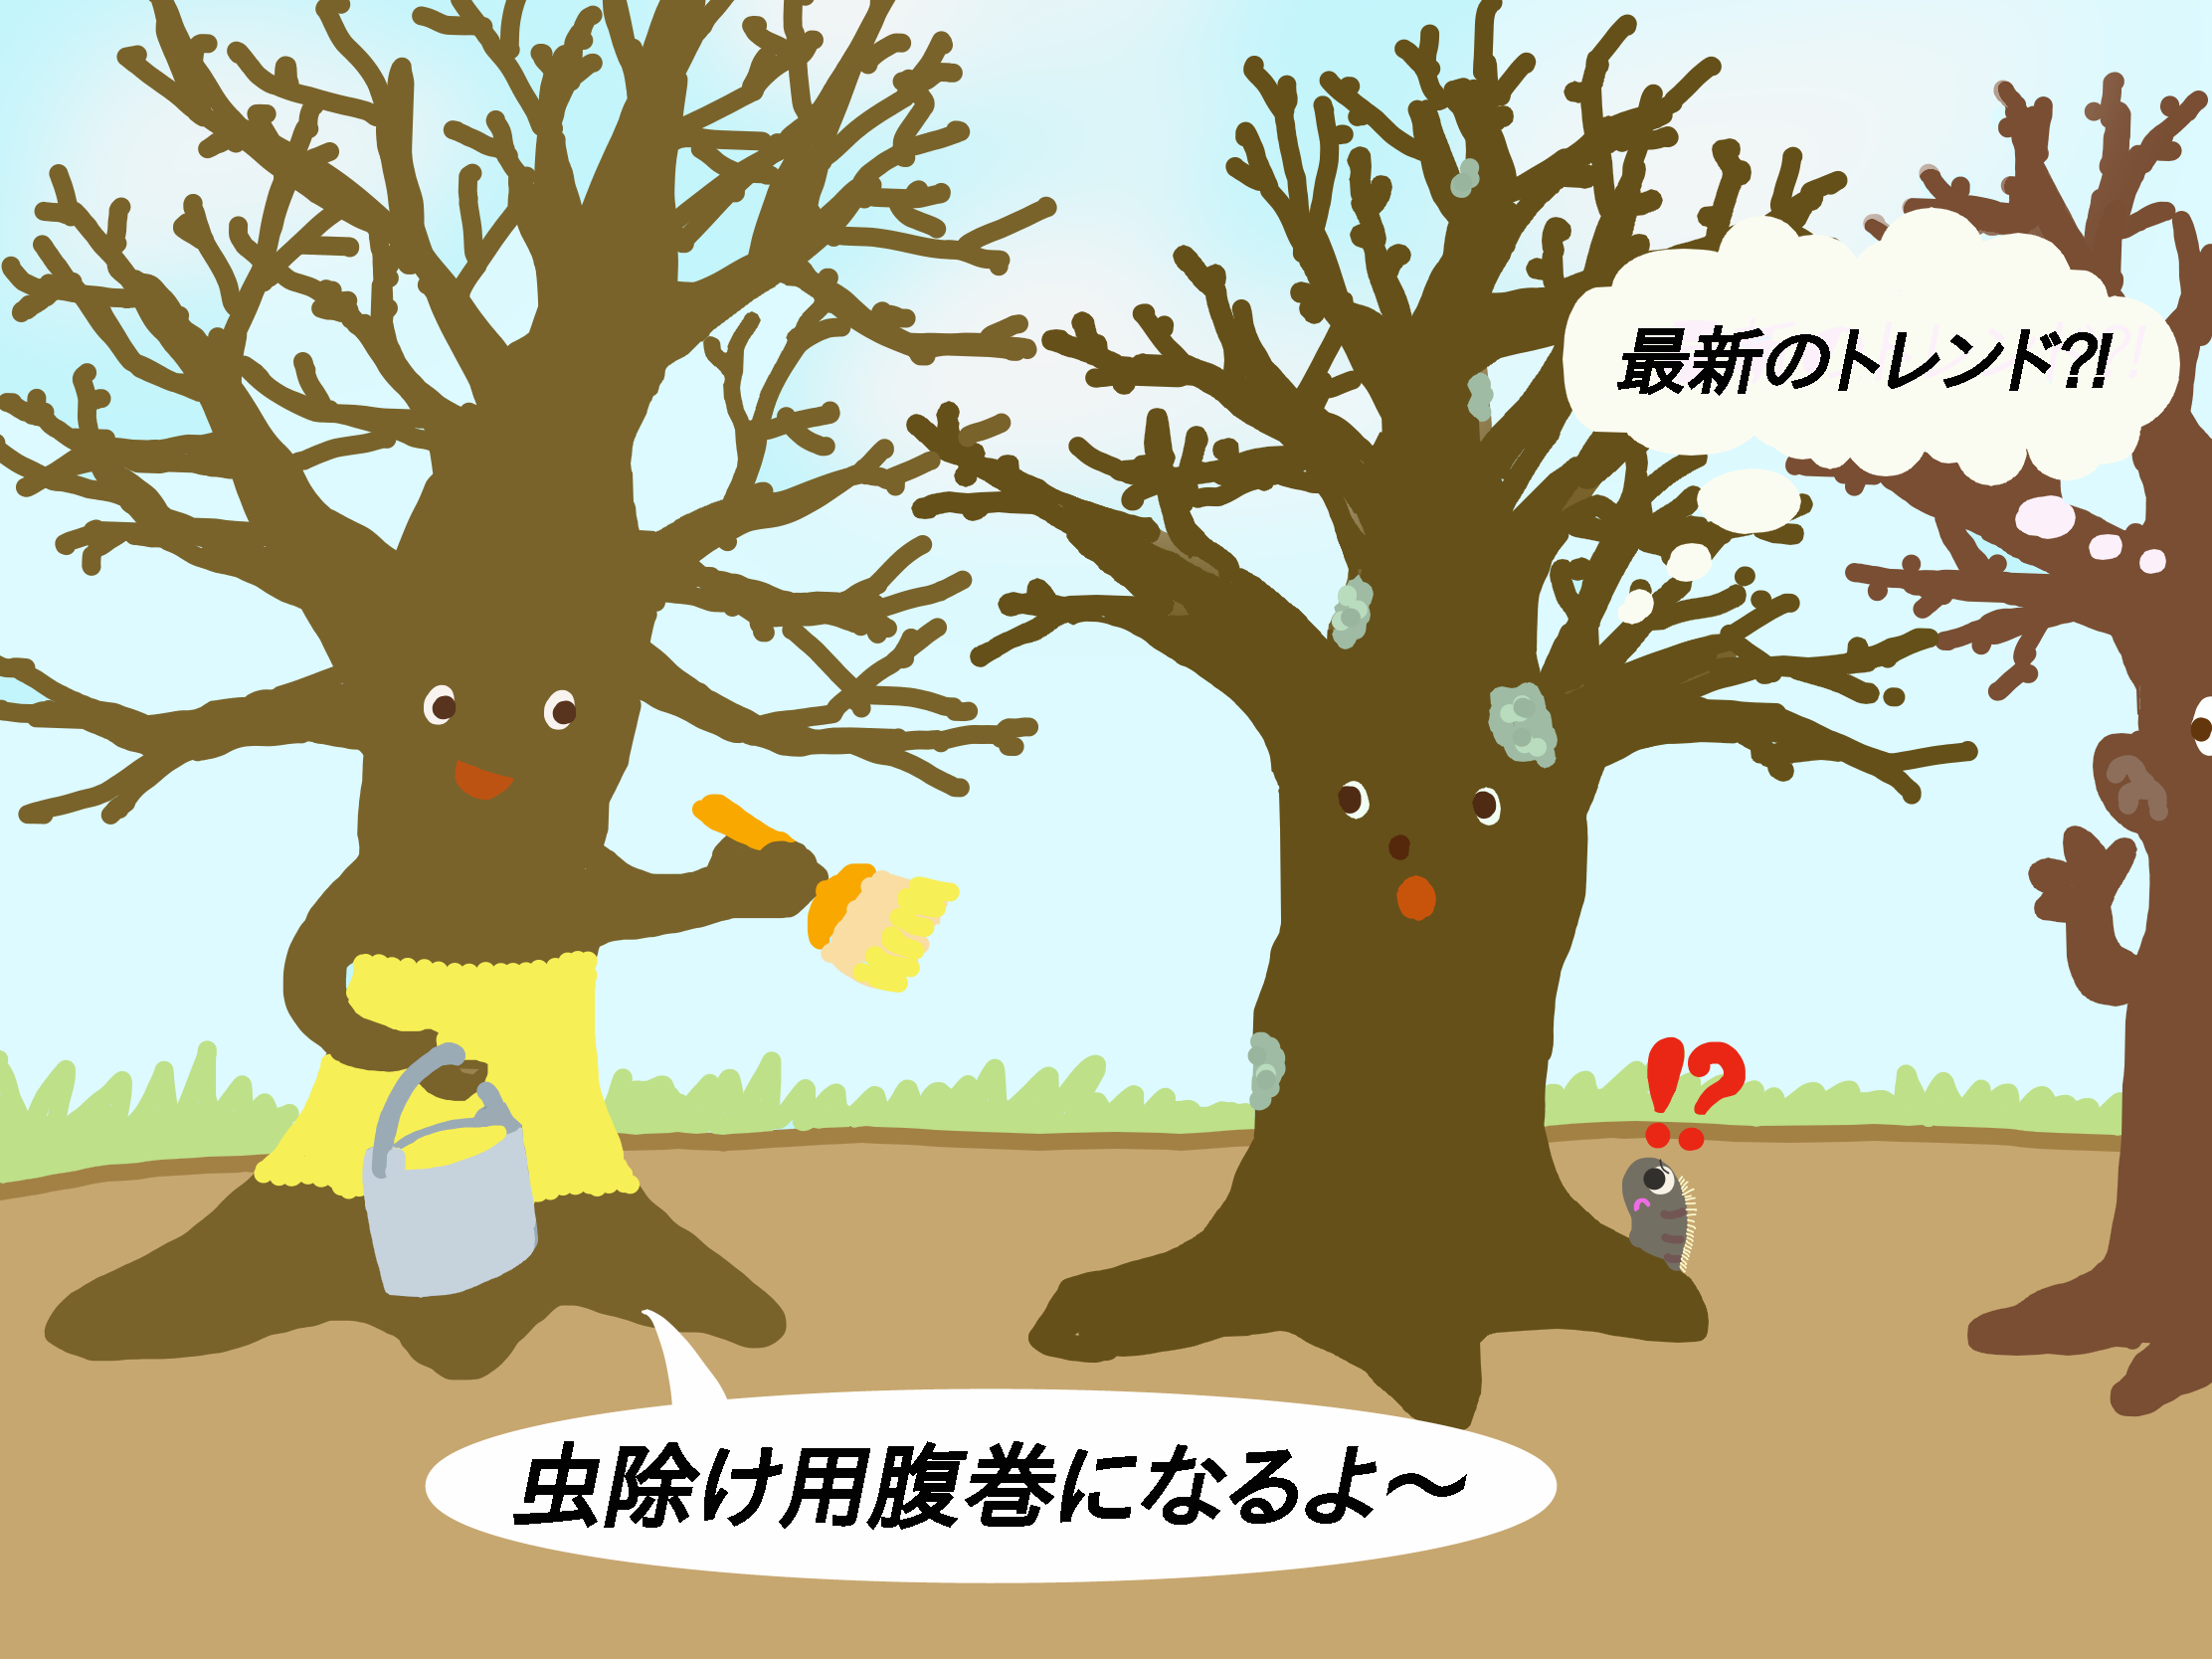 桜の腹巻き 松の 菰巻き に代わる冬の新風物詩 科学実験データ 科学実験データベース 公益財団法人日本科学協会